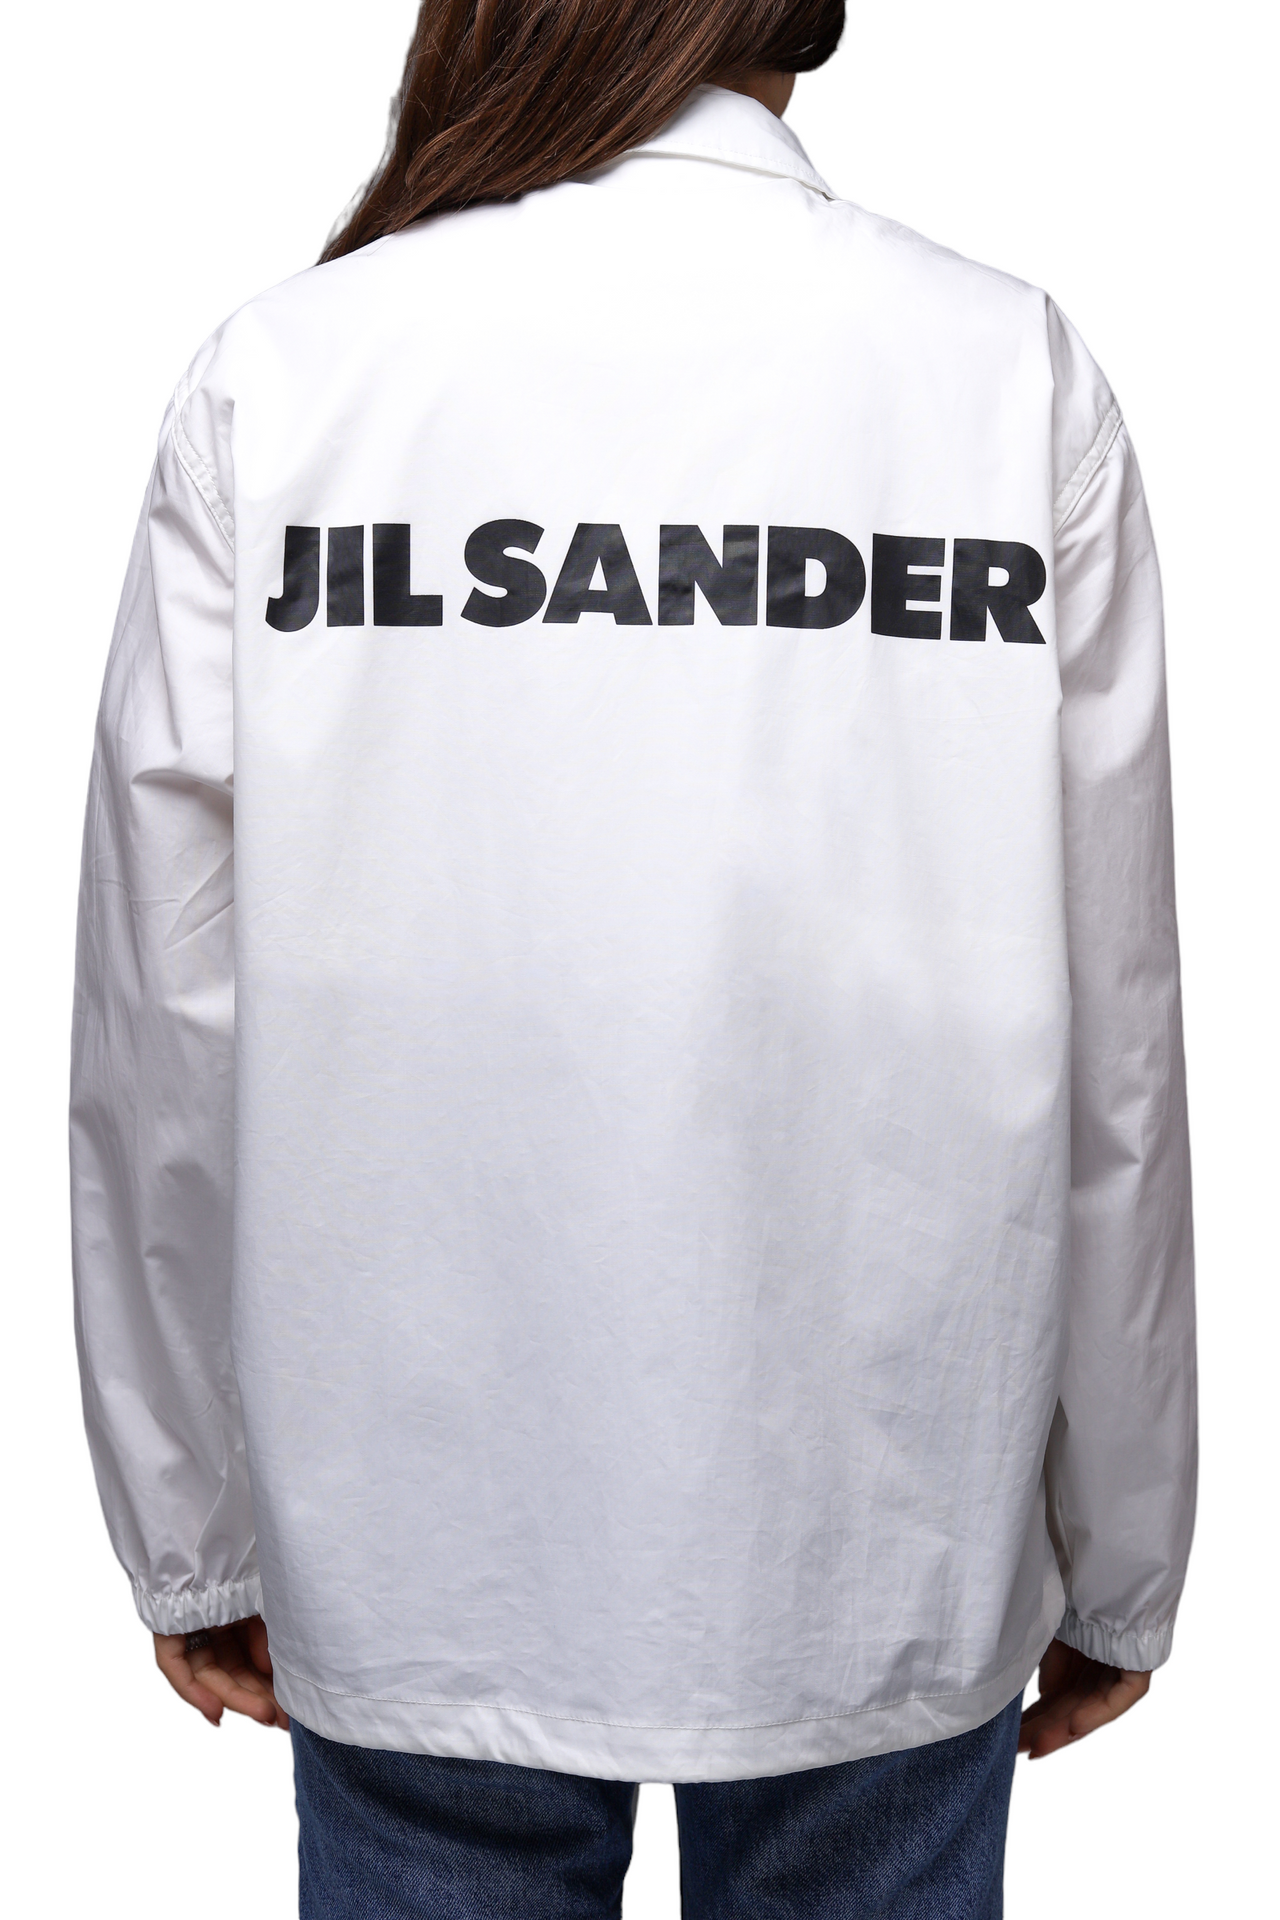 Jil Sander Logo Print Back Coach Jacket White